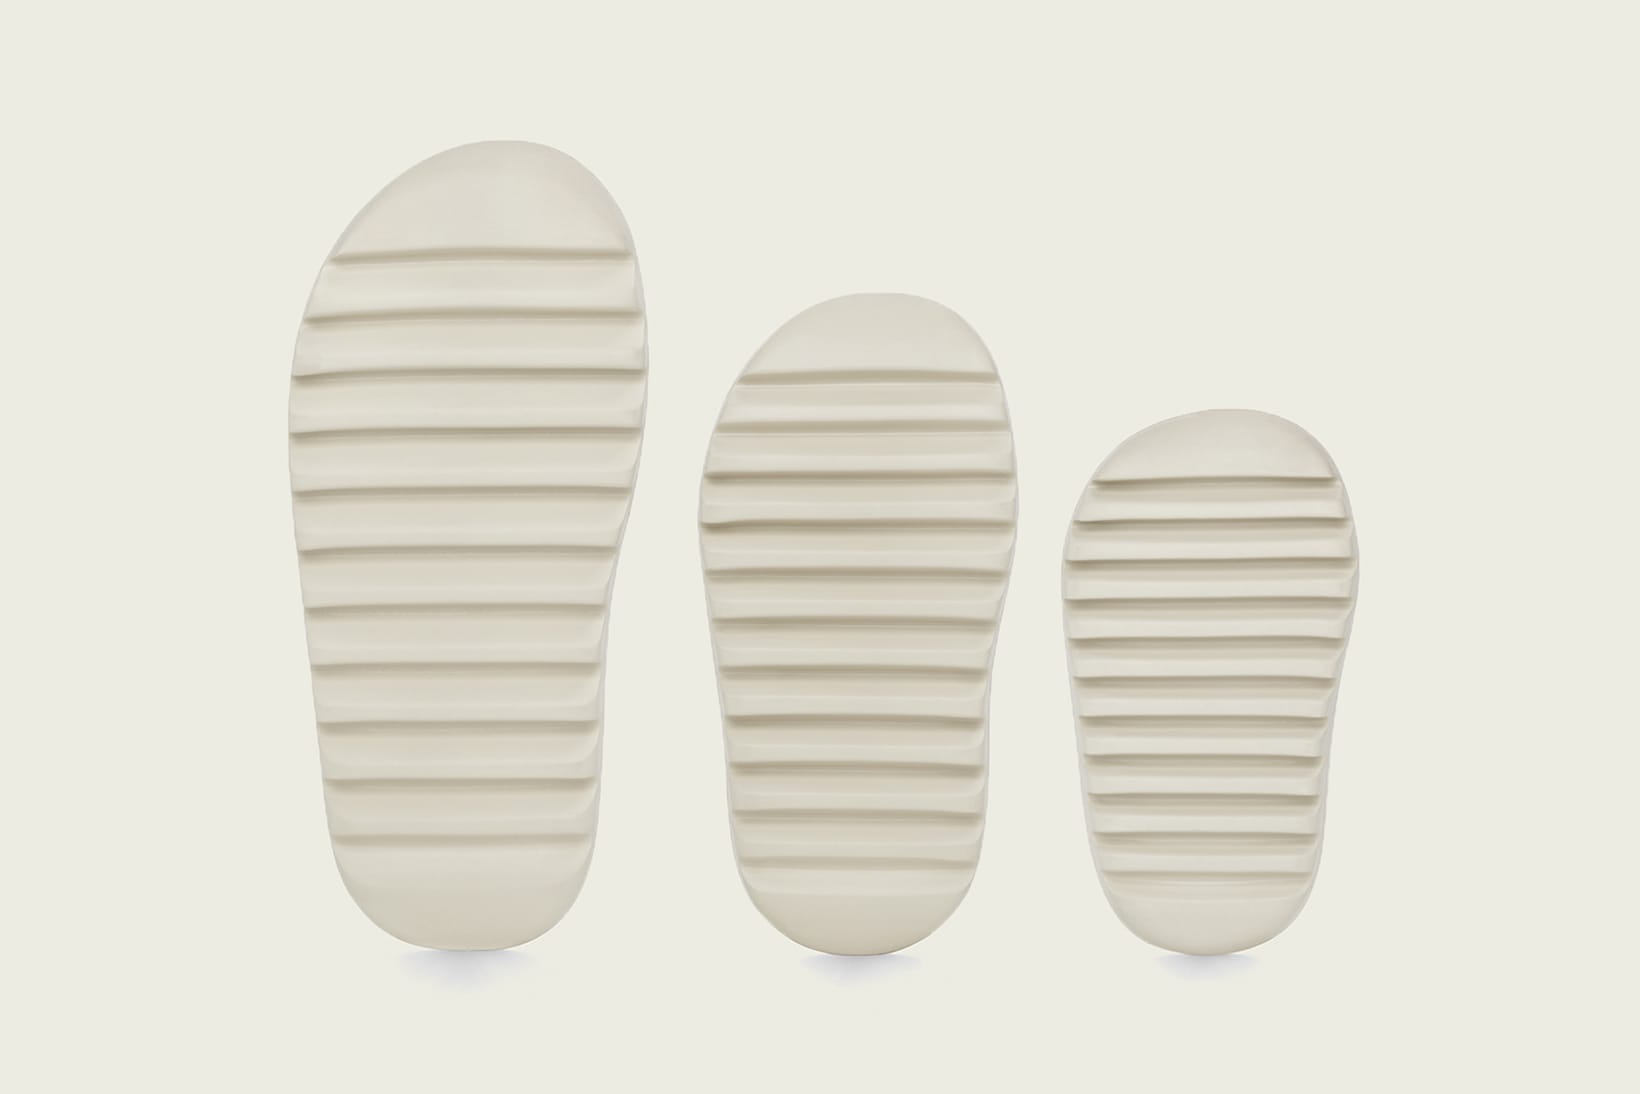 yeezy slippers 2019